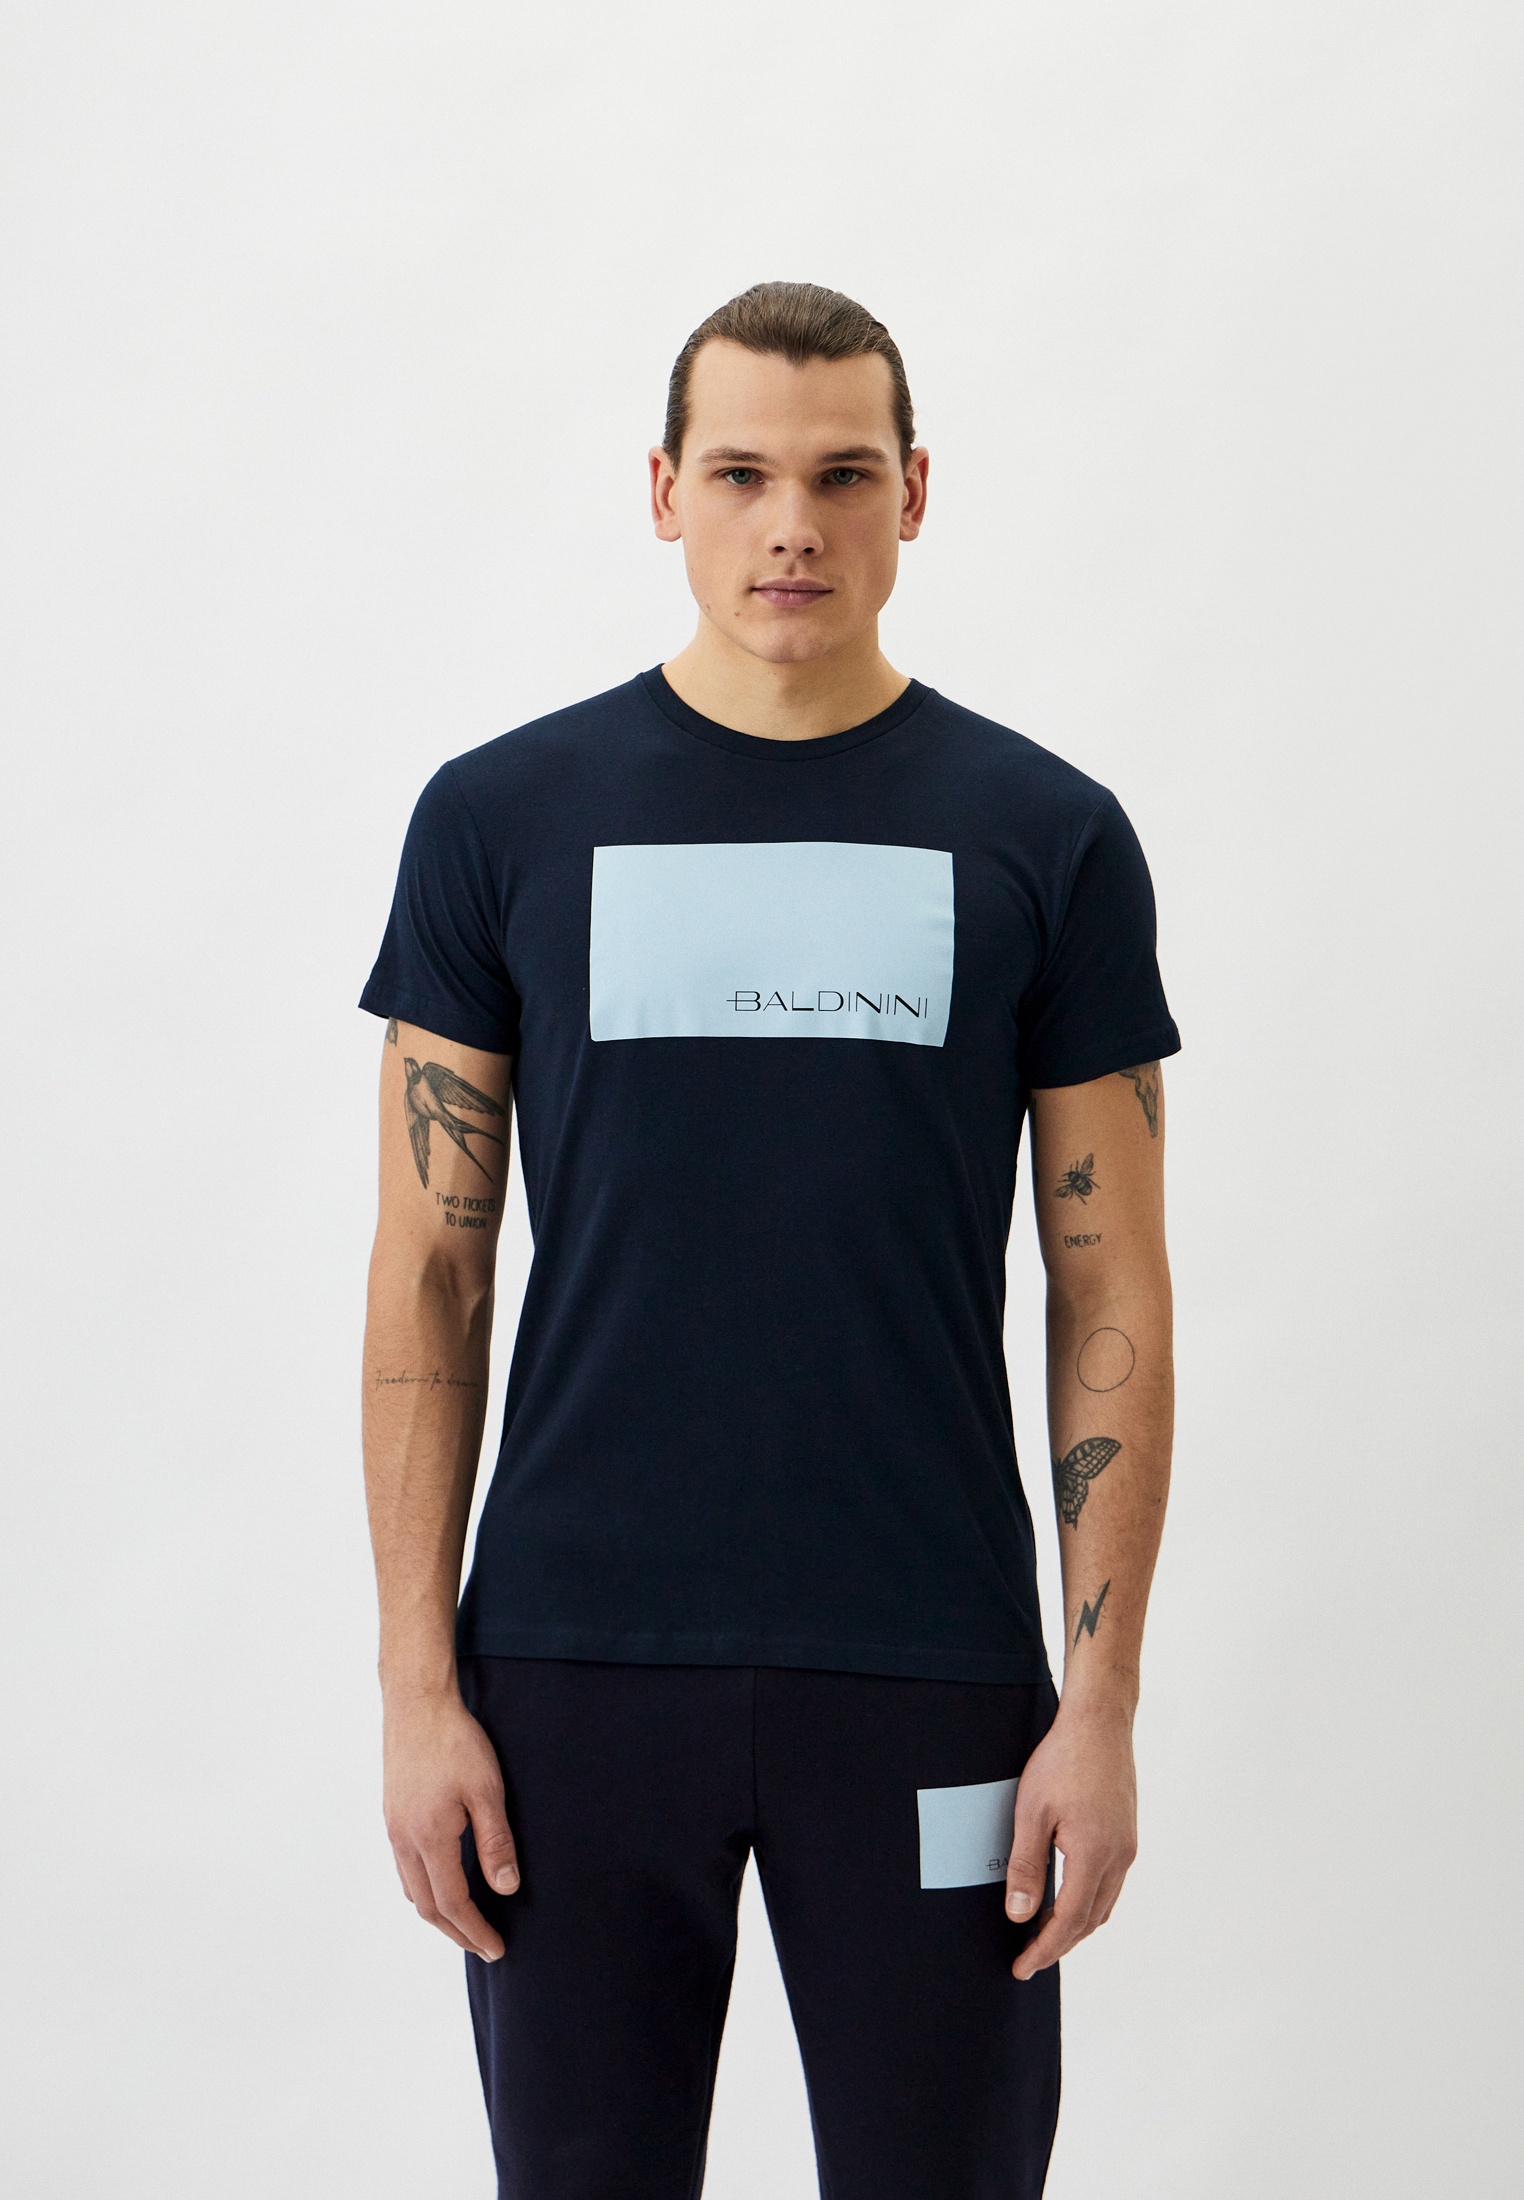 Мужская футболка Baldinini (Балдинини) B-OLM-M014: изображение 1